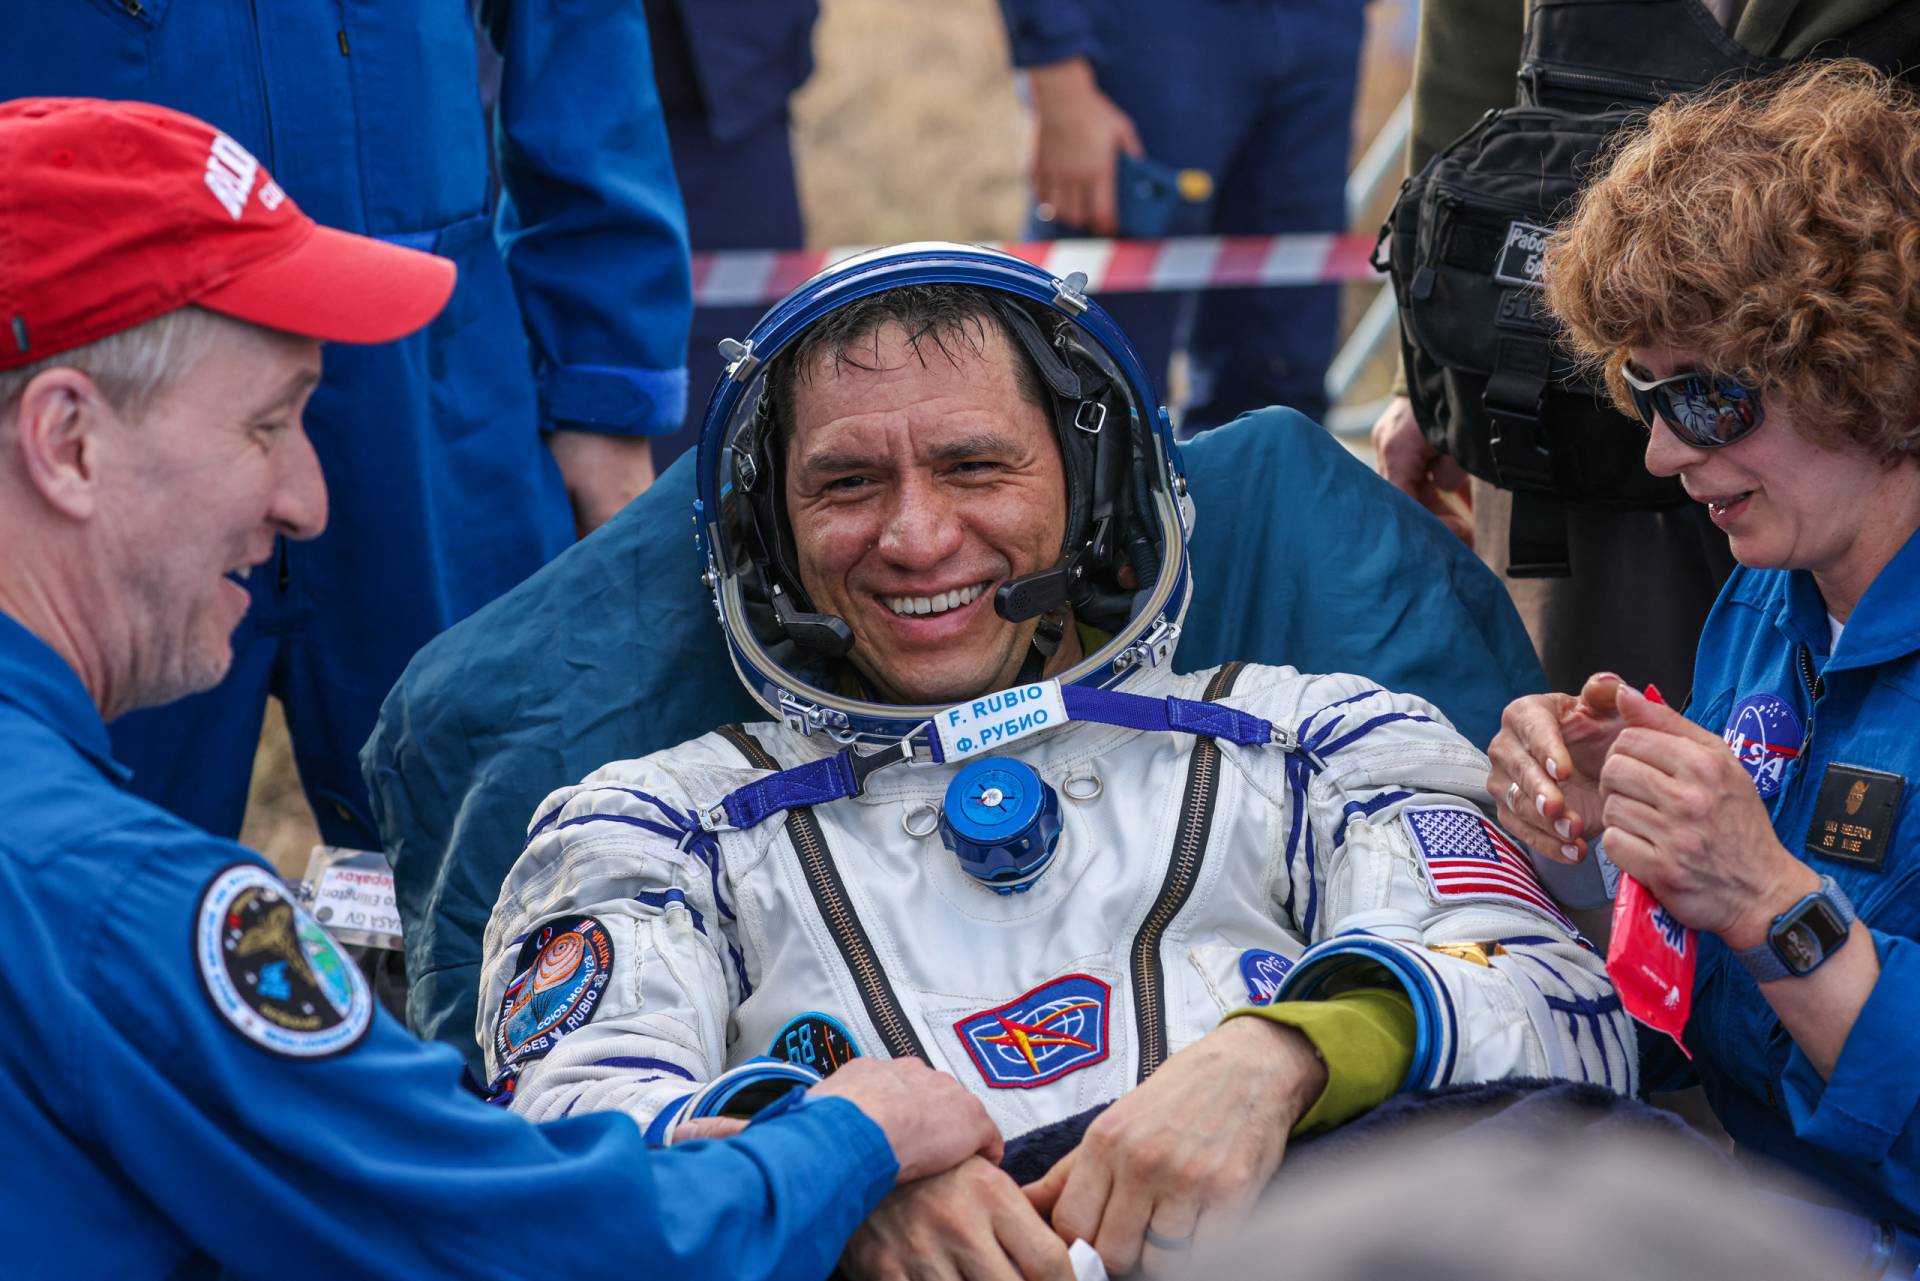 Τρεις αστροναύτες επέστρεψαν στη Γη μετά από ένα χρόνο στον Διεθνή Διαστημικό Σταθμό